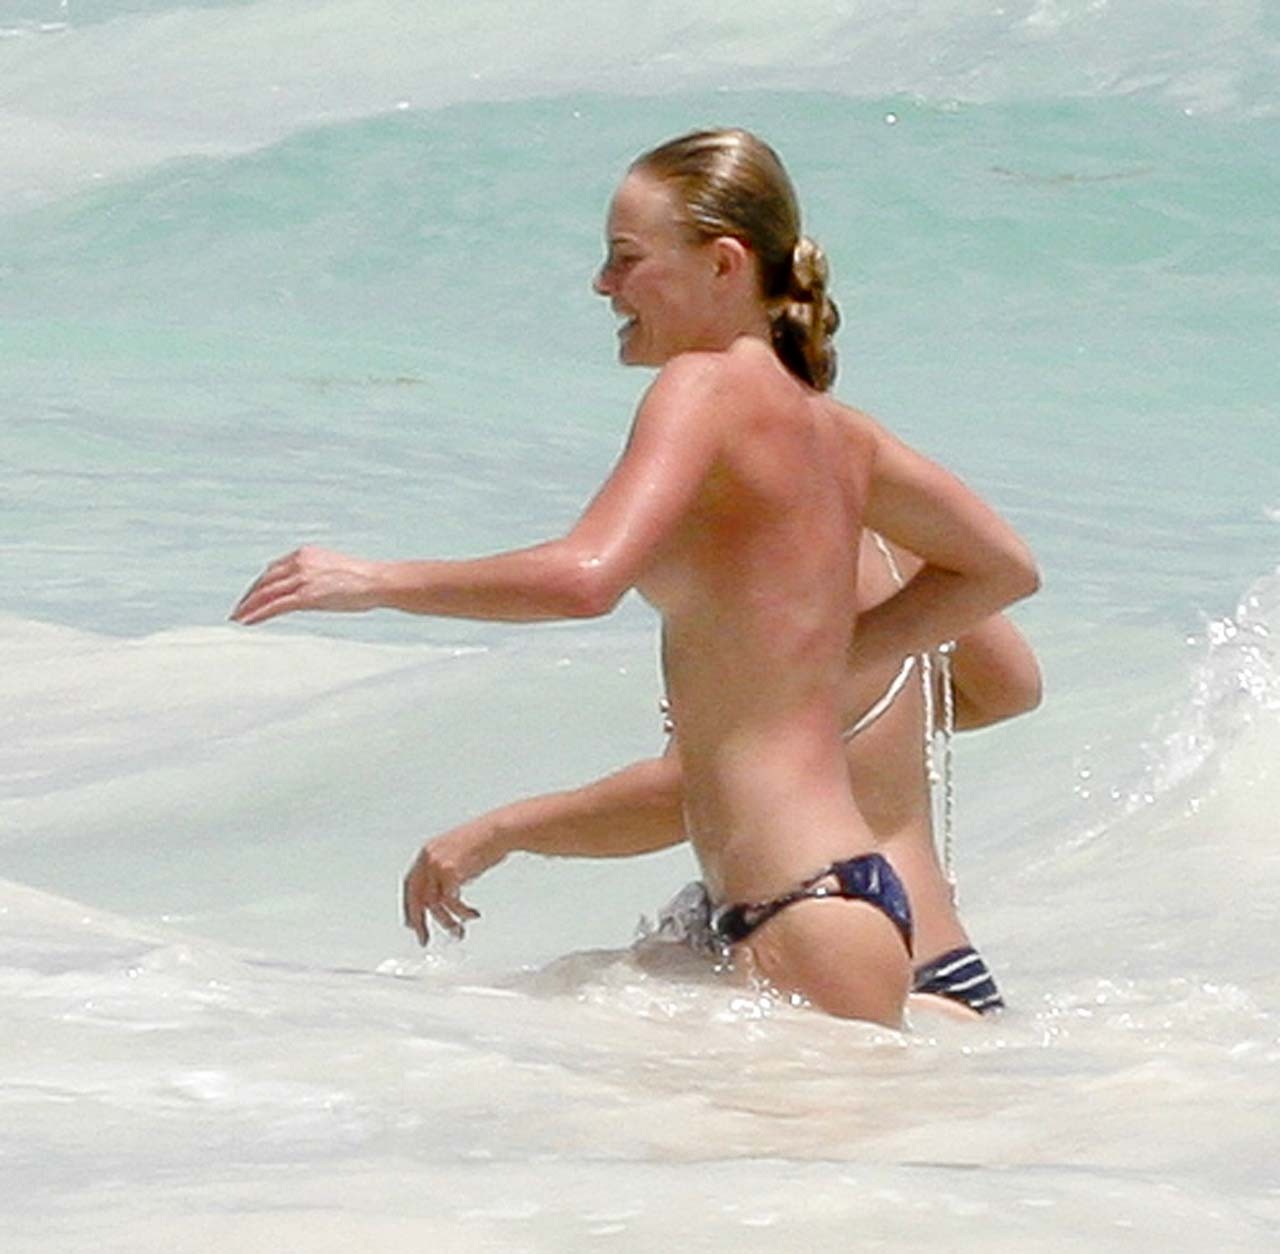 Kate bosworth exponiendo sus bonitas tetas grandes y jugando en la playa foto paparazzi
 #75308473